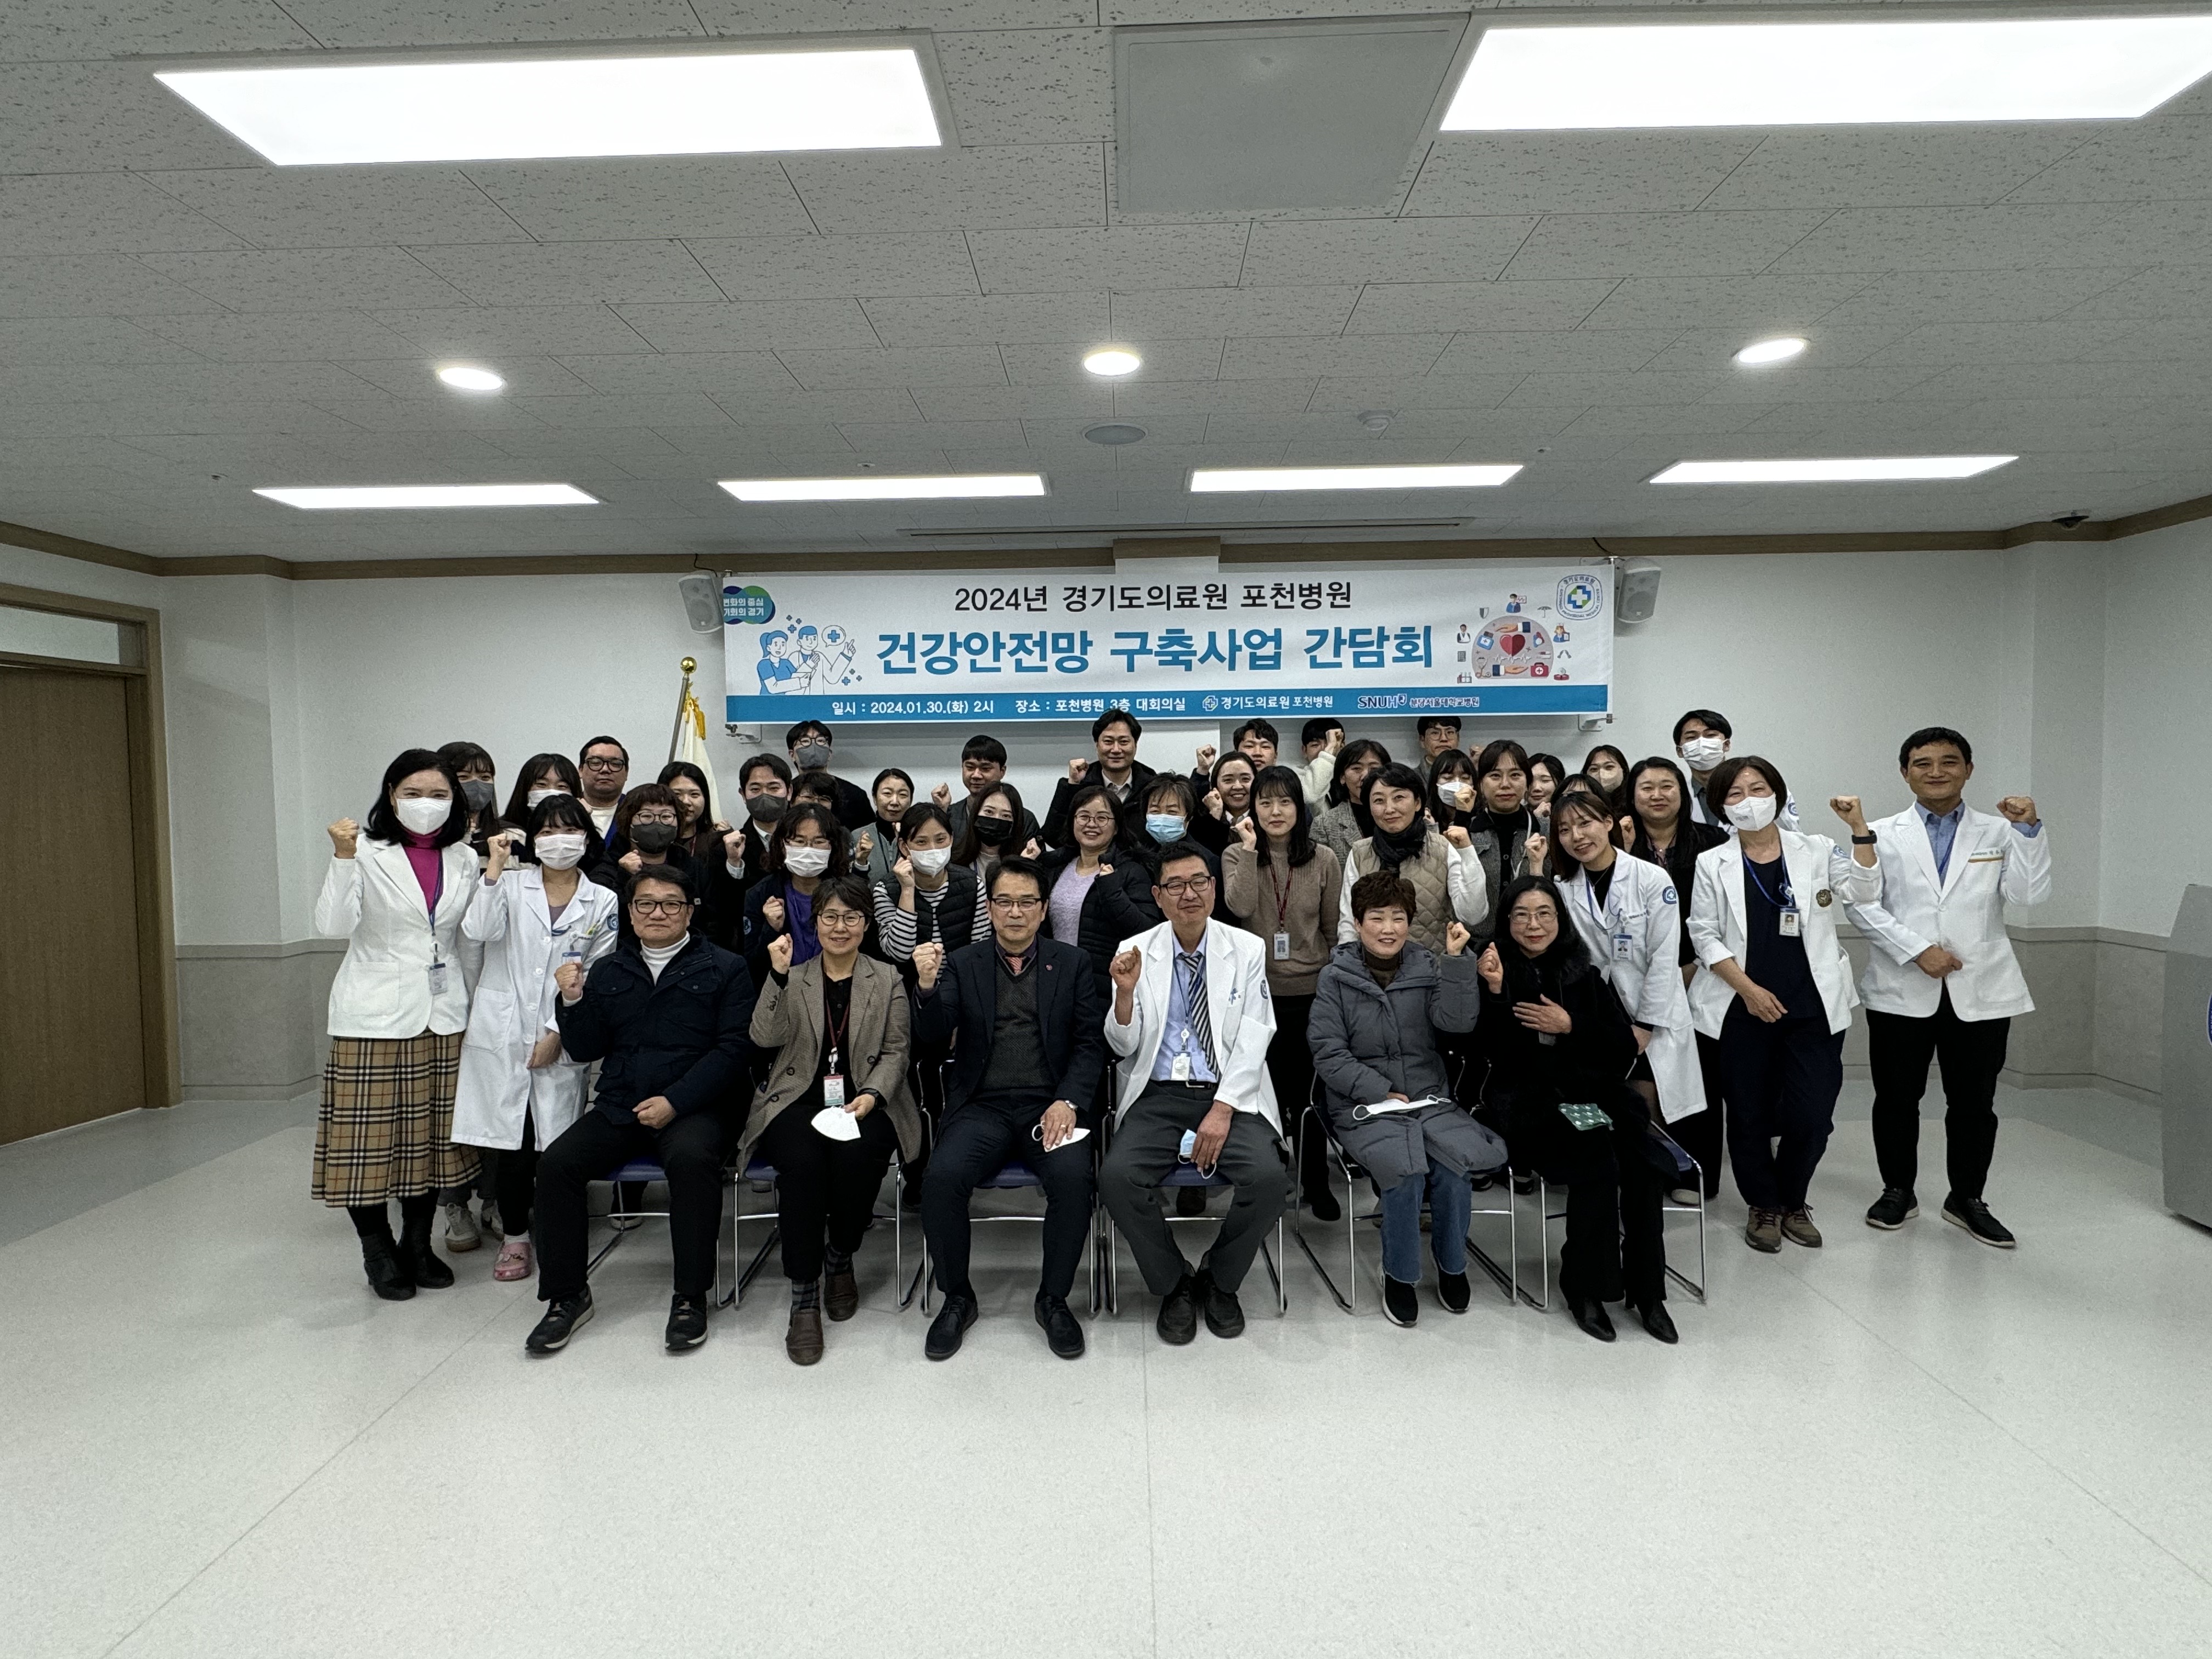 경기도의료원 포천병원, 재택 방문진료 시범사업 설명회 및 건강안전망 구축을 위한 간담회 개최